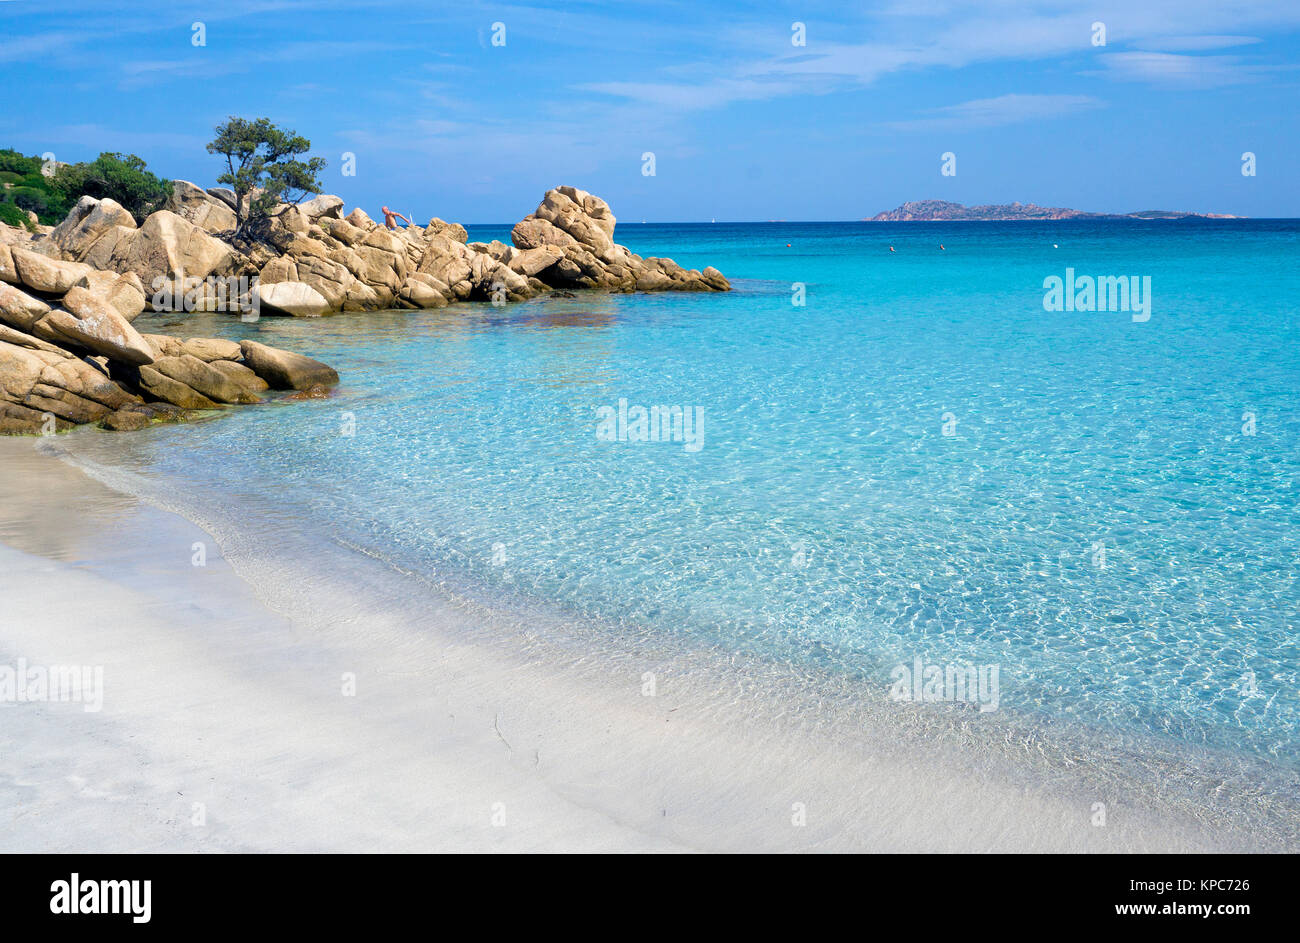 Leute an der idyllischen Strand mit türkisblauen Farbe Meer und Felsen an Capriccioli, Costa Smeralda, Sardinien, Italien, Mittelmeer, Europa Stockfoto